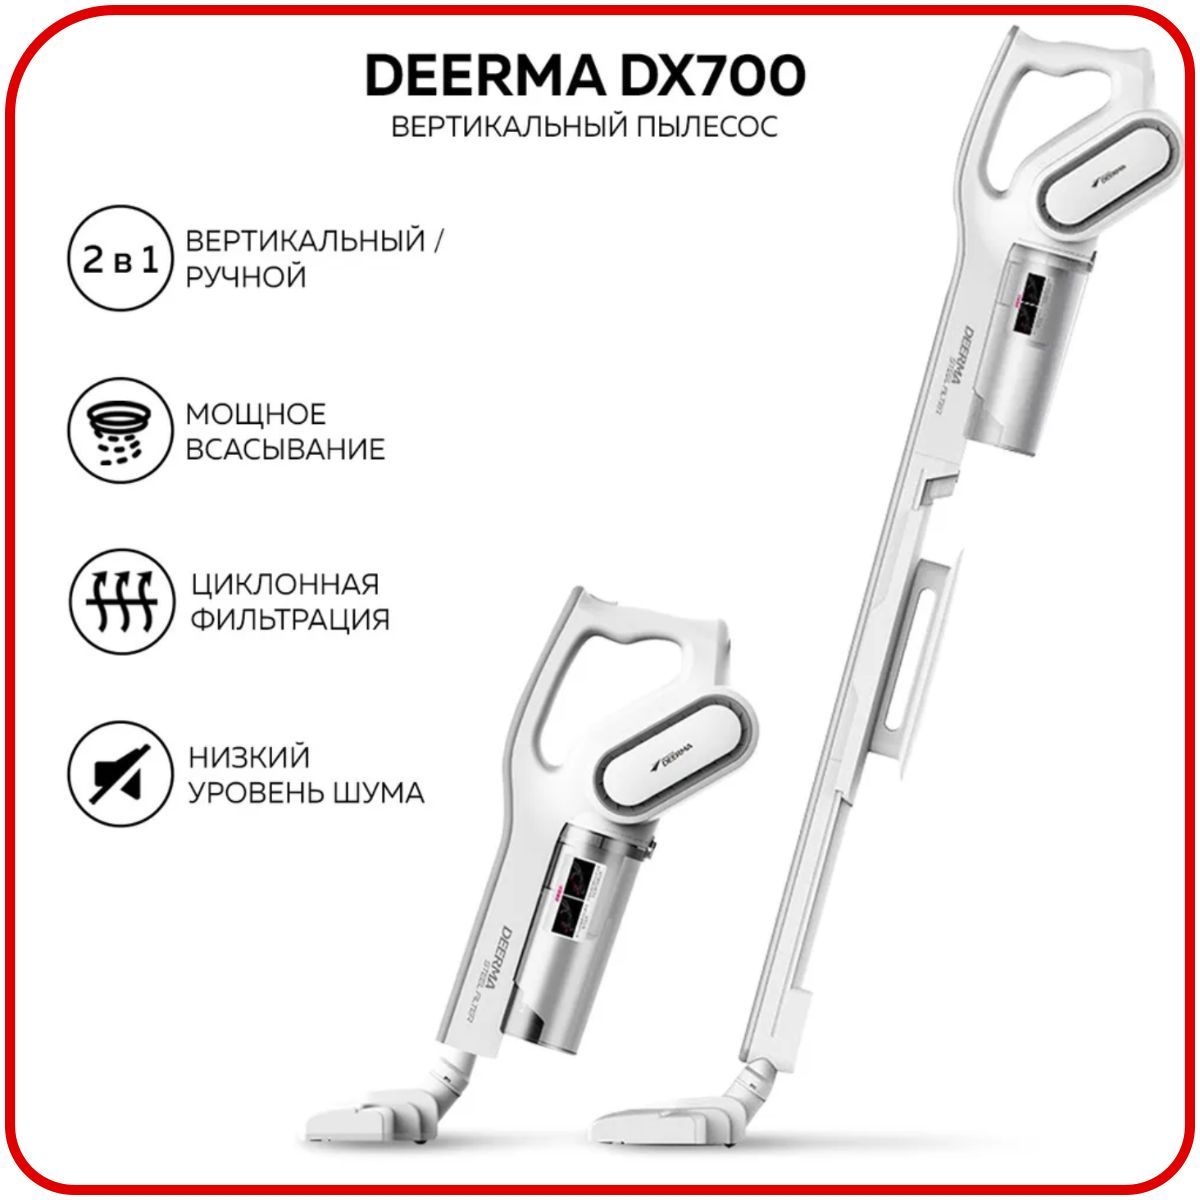 Dx700 pro купить. Пылесос Deerma dx700s. Ручной пылесос Xiaomi Deerma dx700s. Пылесос вертикальный Xiaomi Deerma dx700s. Вертикальный пылесос Xiaomi Deerma Vacuum Cleaner (dx700s).